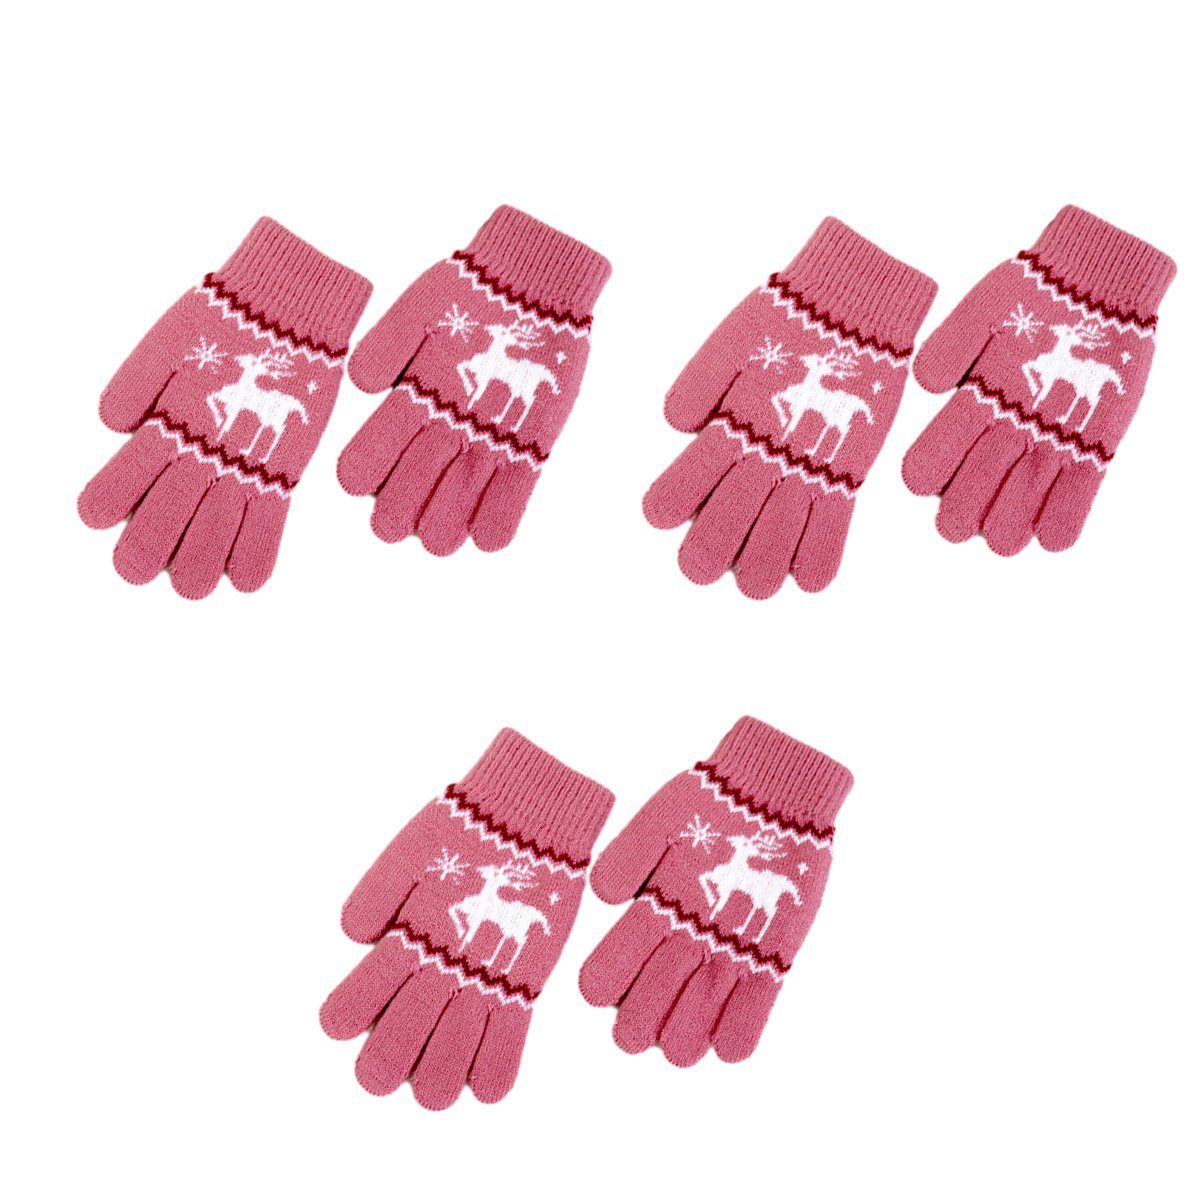 ZmdecQna Strickhandschuhe 3 Paar für Handschuhe Handschuhe Rosa Vollfinger Kinder,Winterthermische